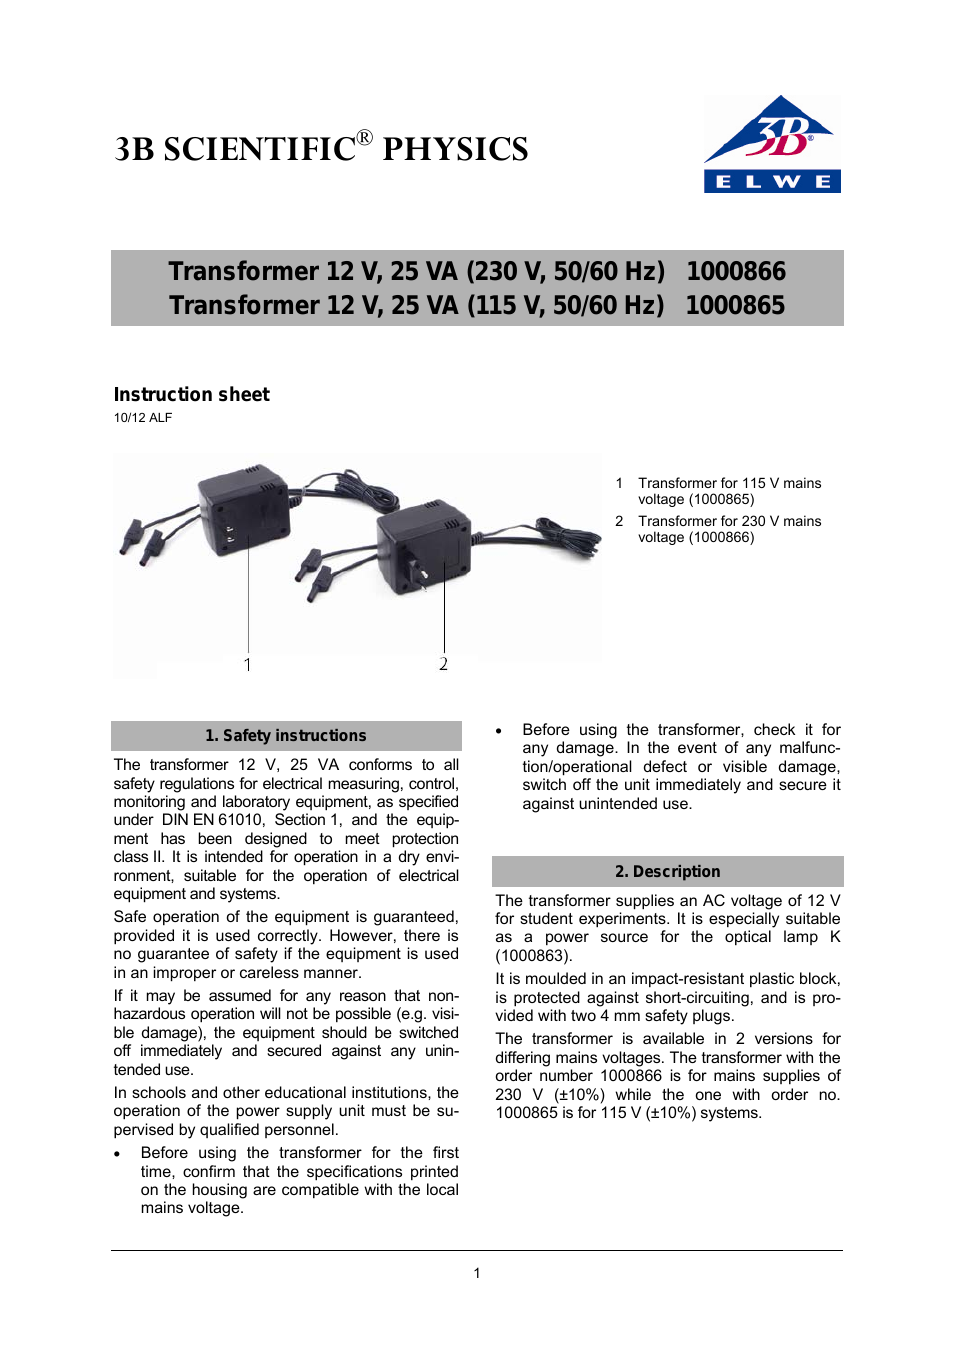 Transformer 12 V, 25 VA (115 V, 50__60 Hz)